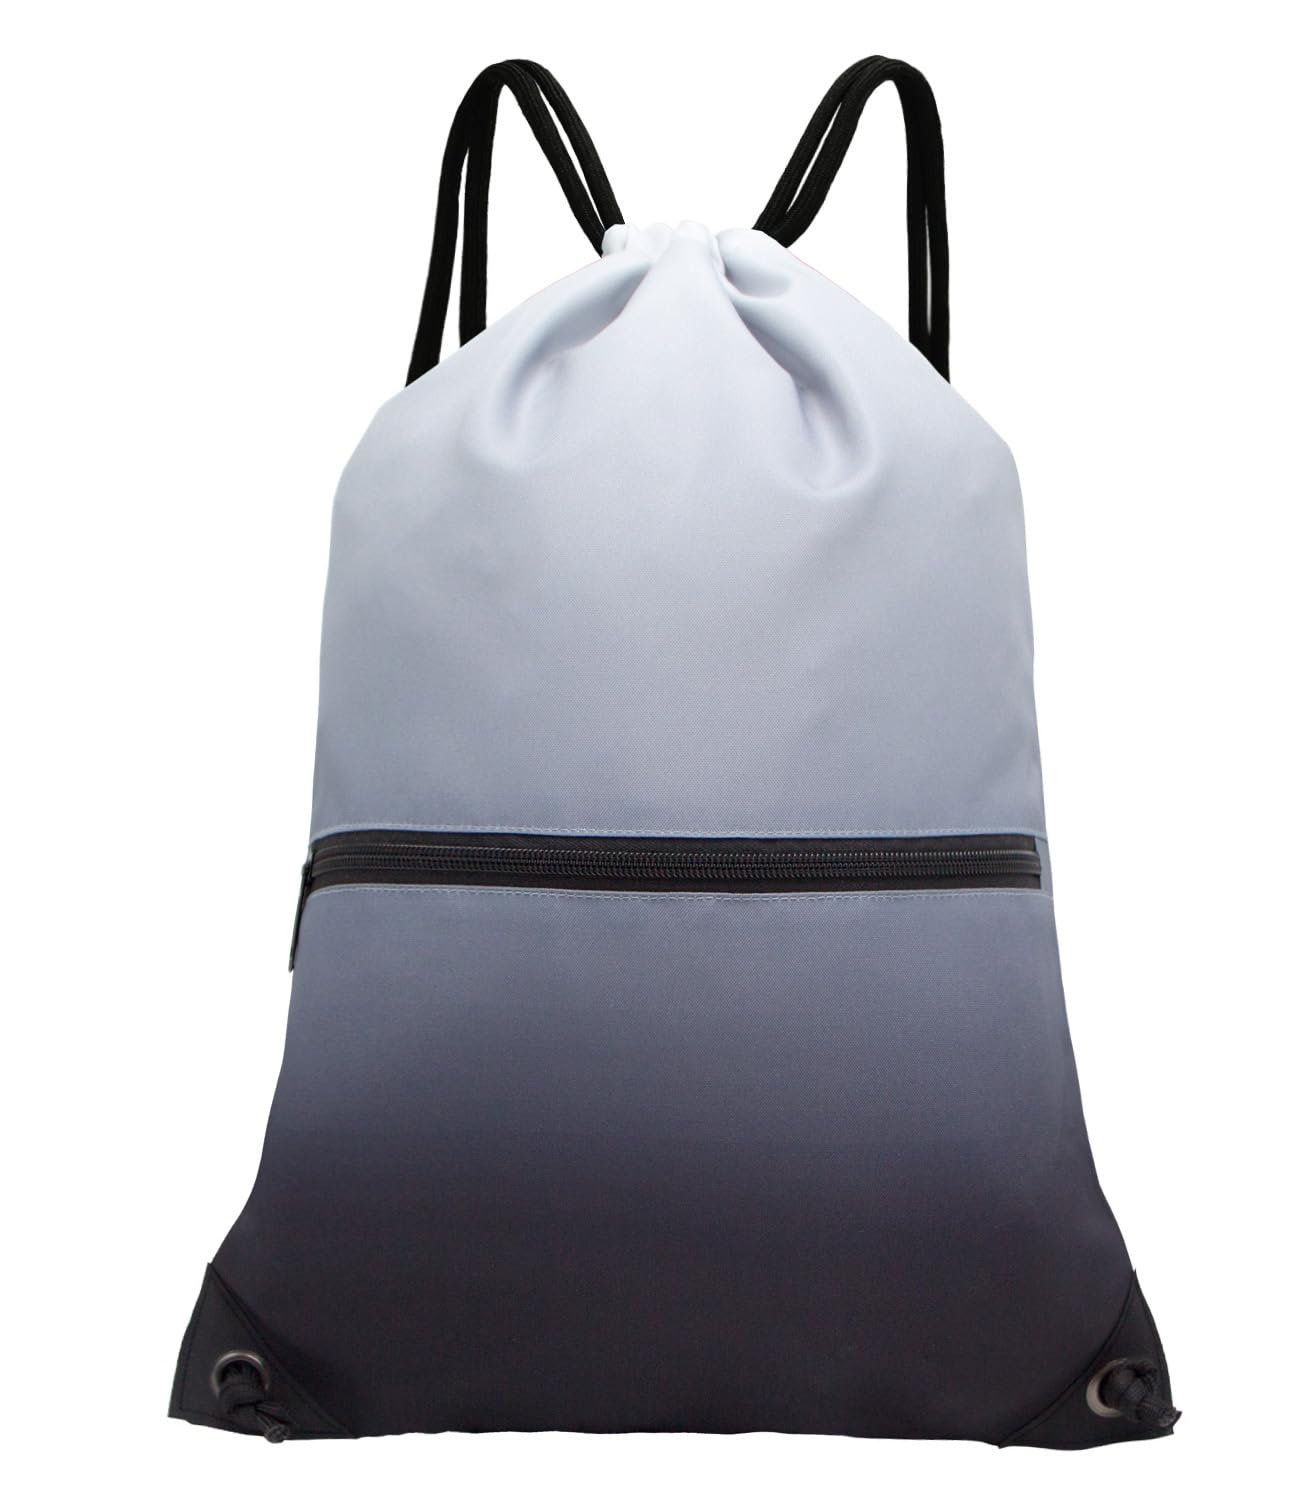 Drawstring Backpack Bag Sport Gym Sackpack Gradient Black HLC001